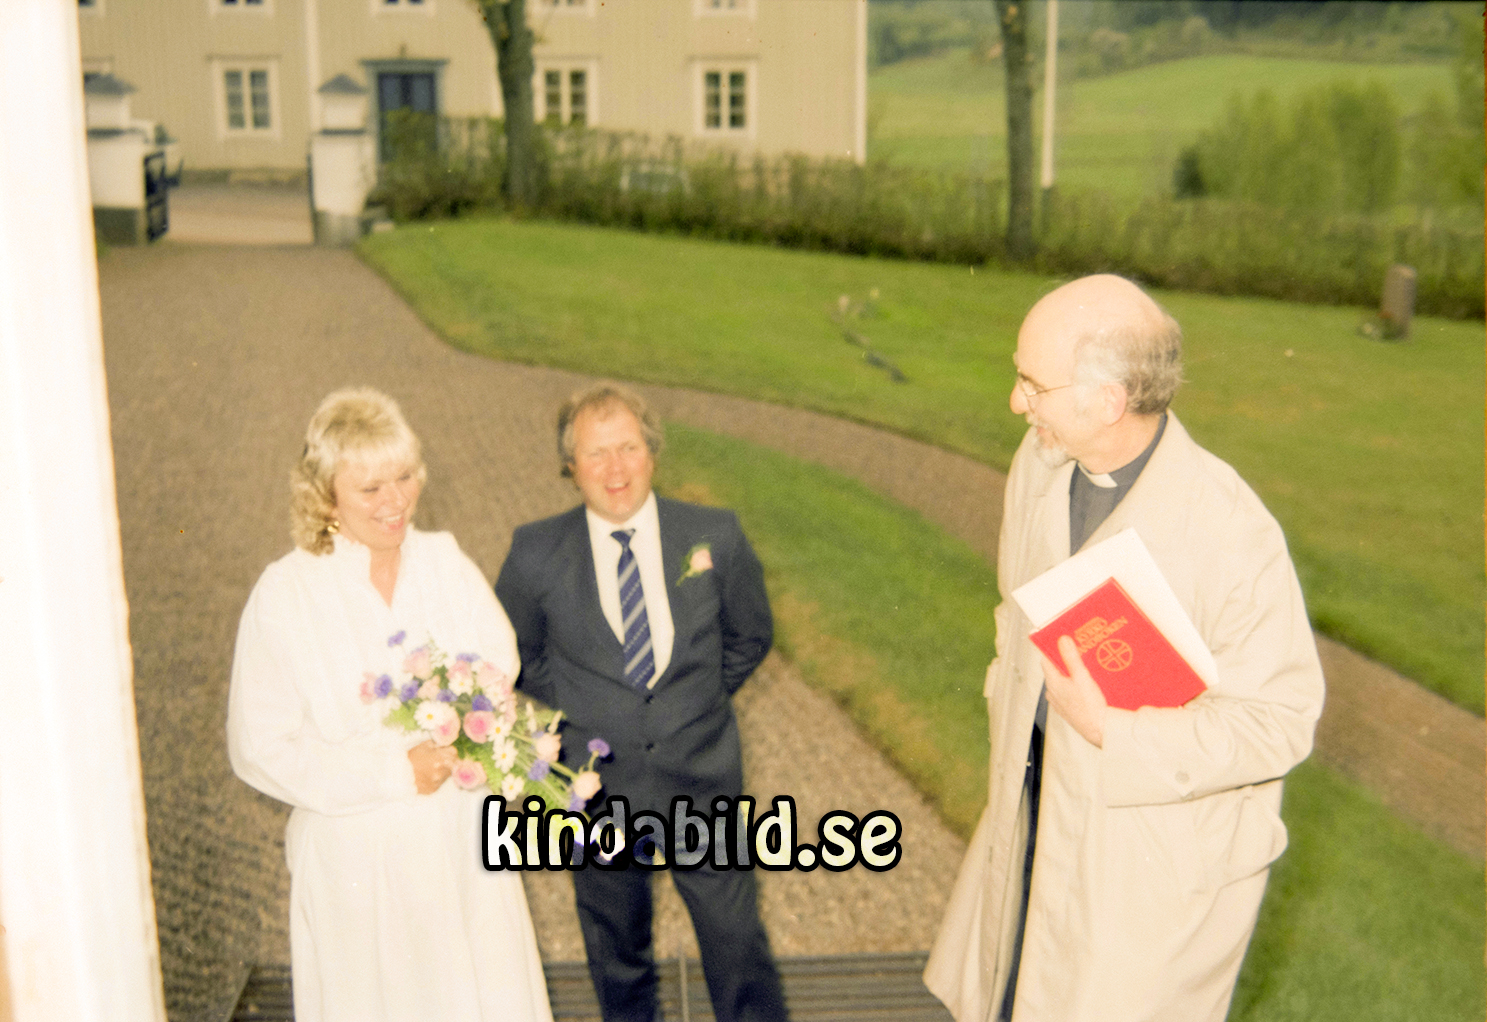 Bengt Pettersson
raja
Brudpar


